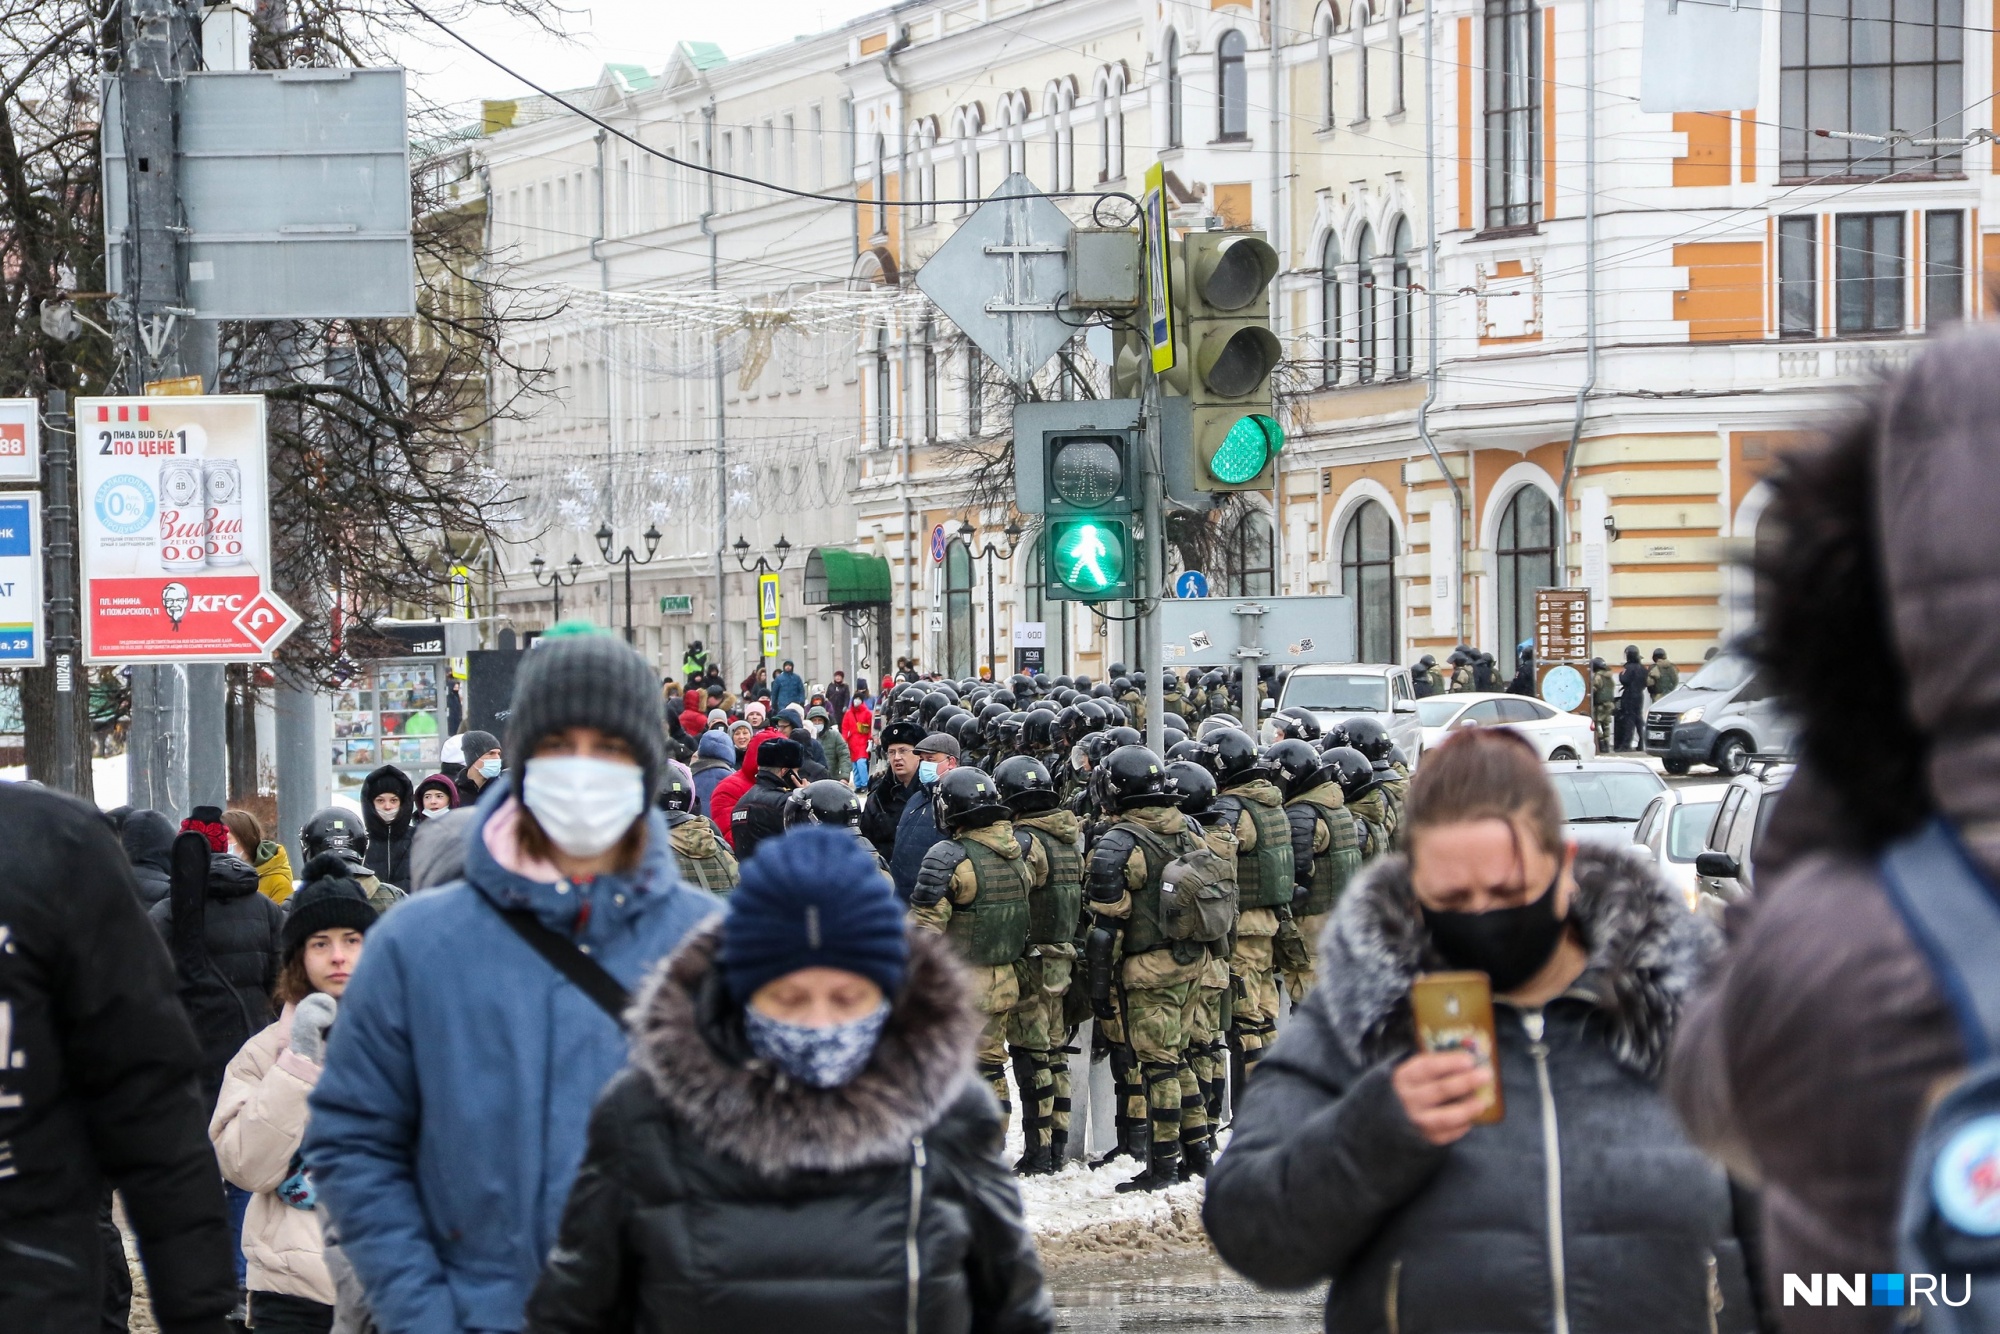 Нижний Новгород <a href="https://www.nn.ru/text/gorod/2021/01/31/69740638/" target="_blank" class="_">вошел в число лидеров по количеству задержаний</a> в стране по итогам митинга <nobr class="_">31 января</nobr>. В отделения полиции было доставлено почти 68% протестующих